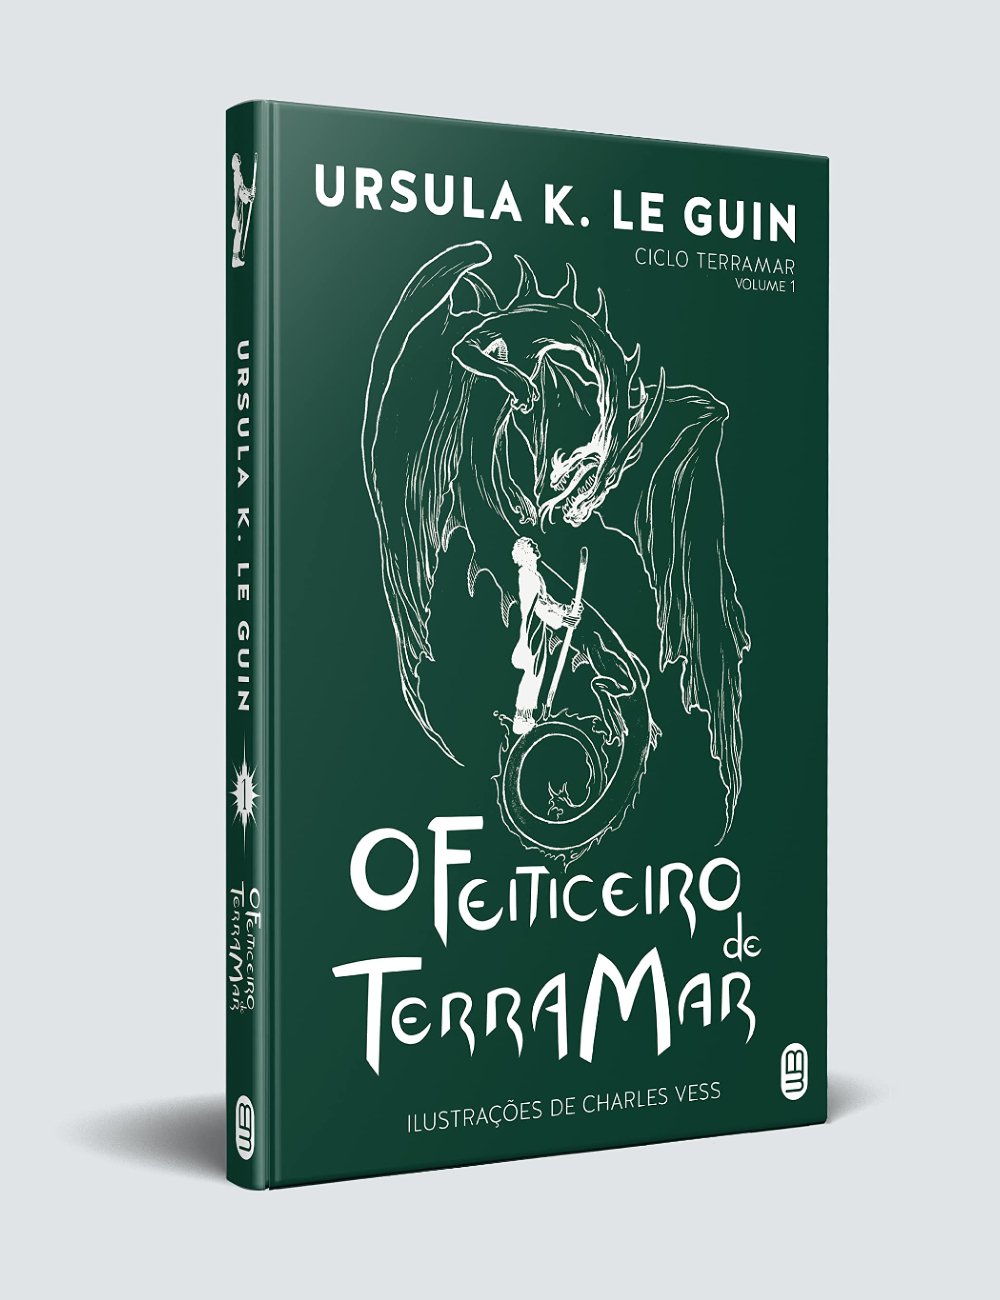 O Feiticeiro de Terramar - Ursula K. Le Guin  - livros bons - livros bons - livros bons - livros bons - https://stealthelook.com.br